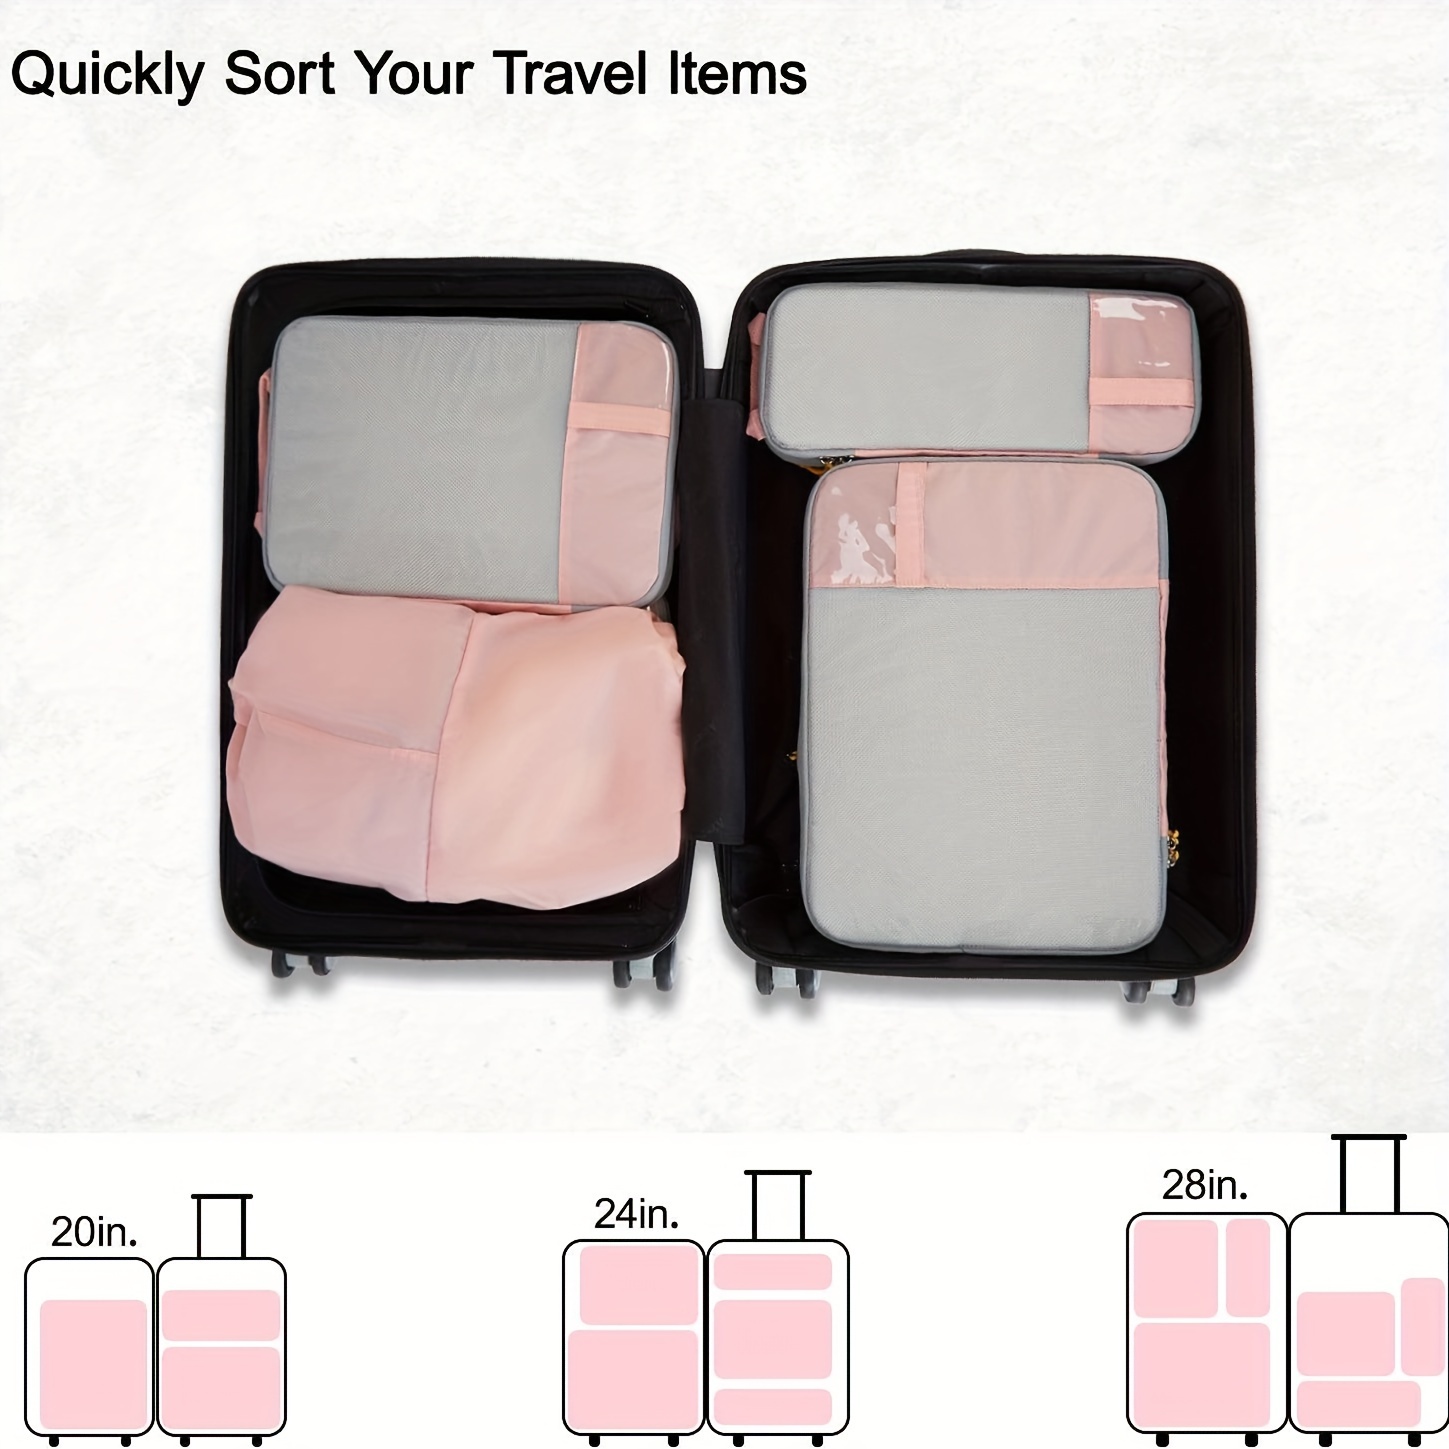 BAGSMART Cubos de embalaje de compresión para maleta, juego de 6 cubos de  embalaje de viaje para equipaje, cubos de viaje de compresión y organizador